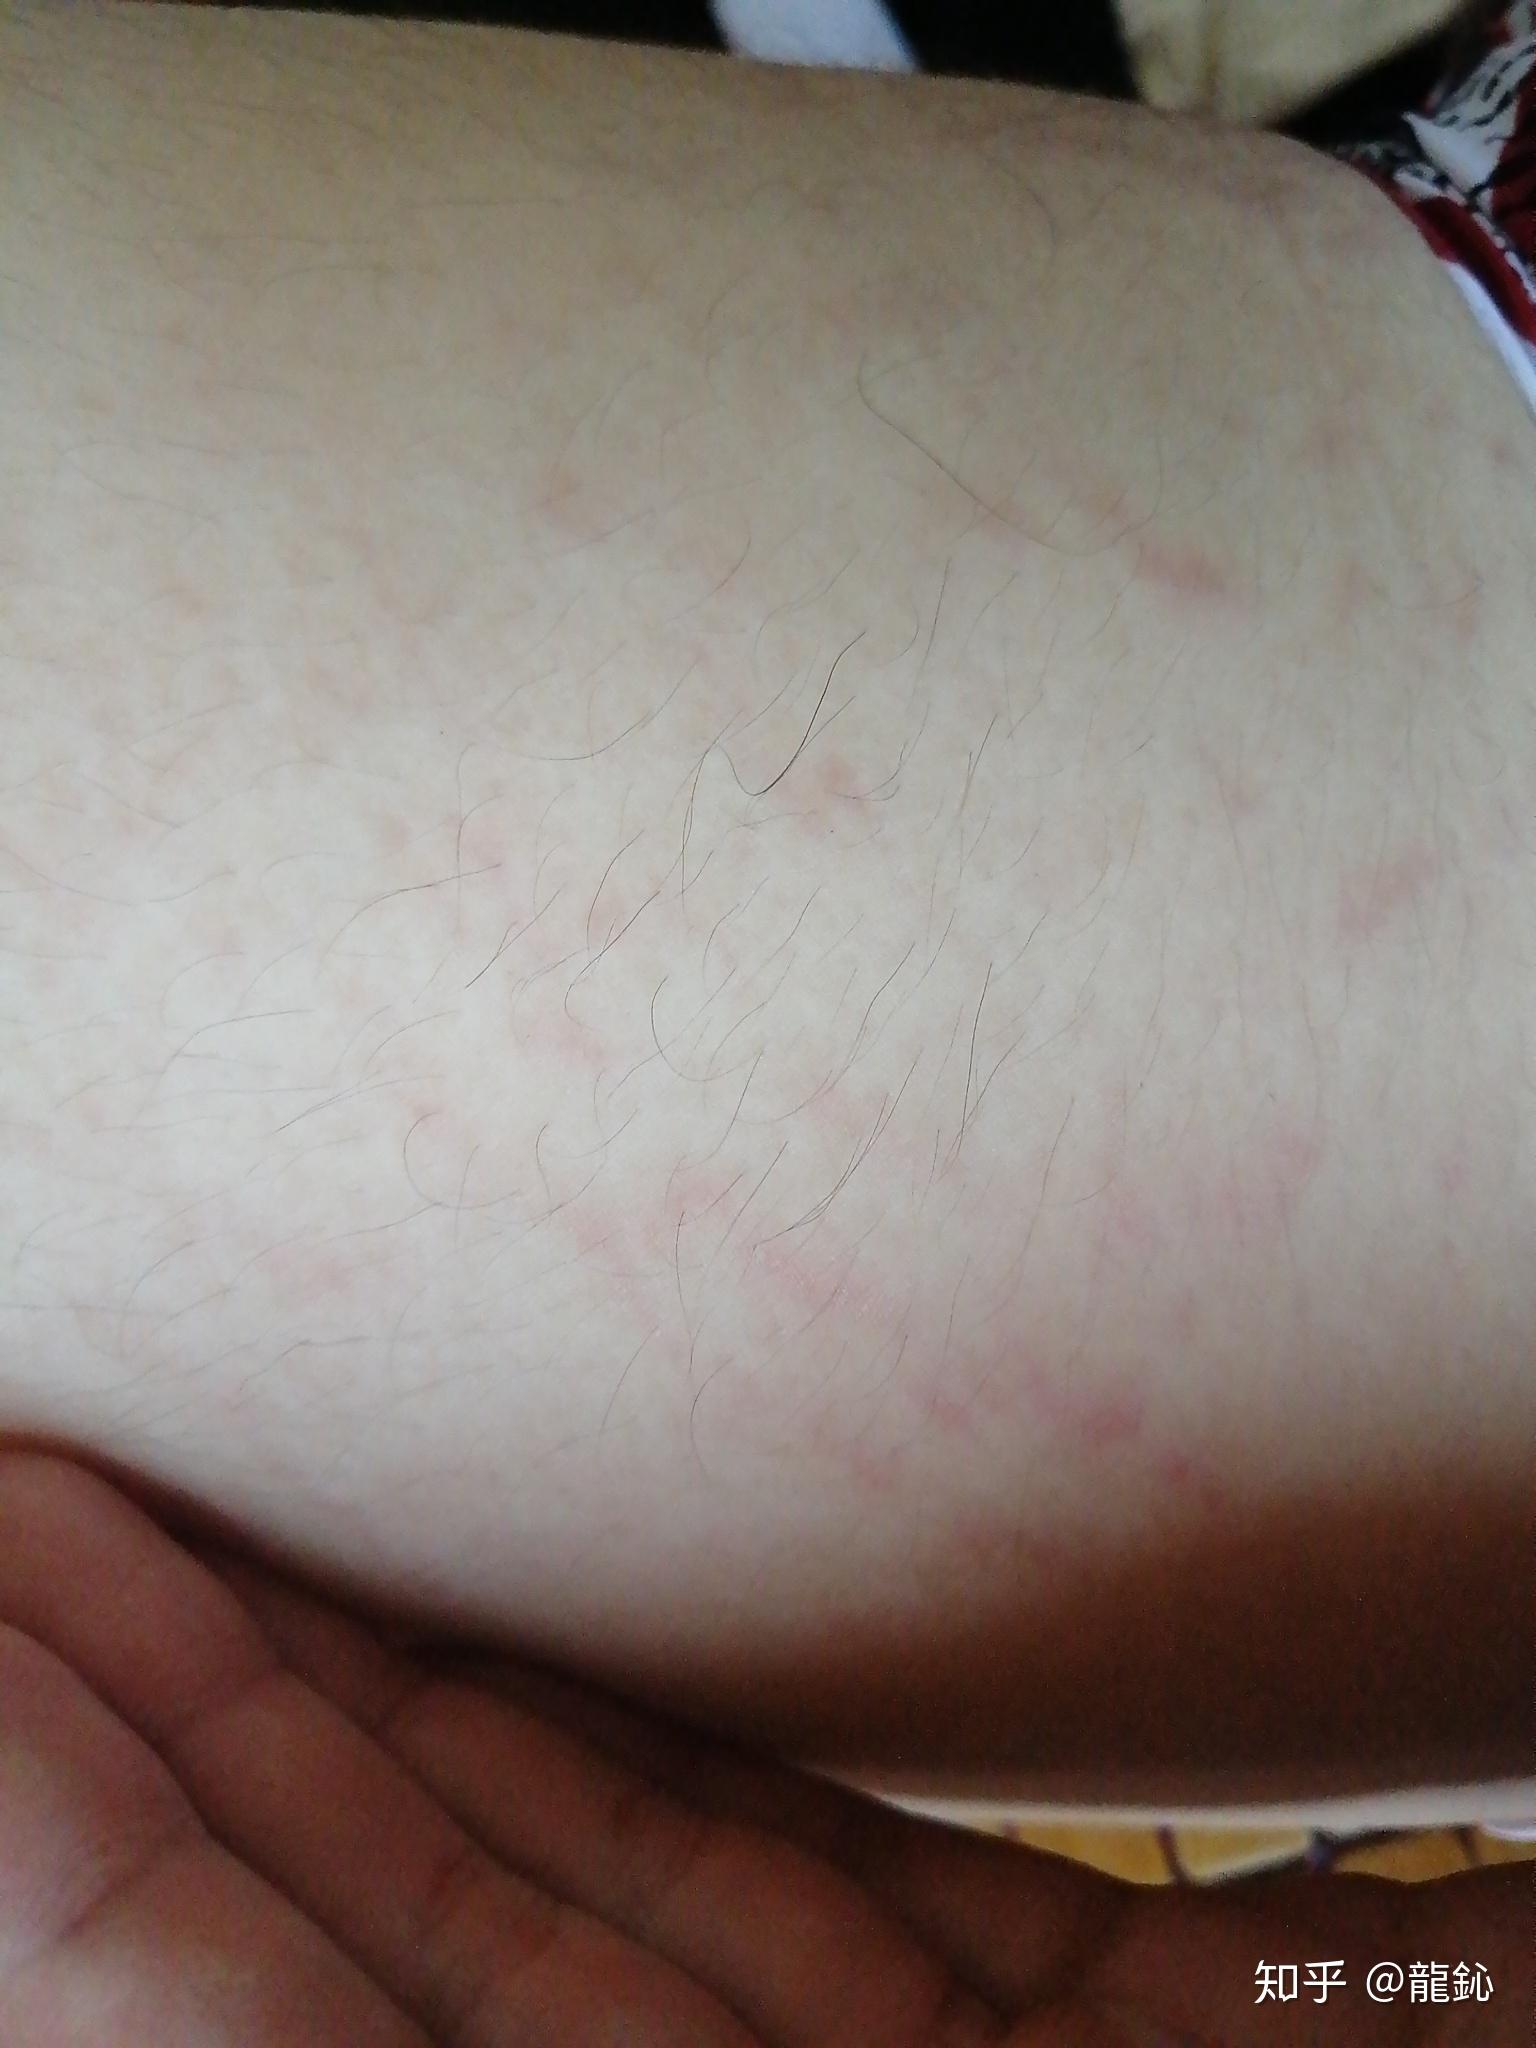 有没有人知道这个我大腿上的纹路红色的是肥胖纹还是生长纹生长纹的话